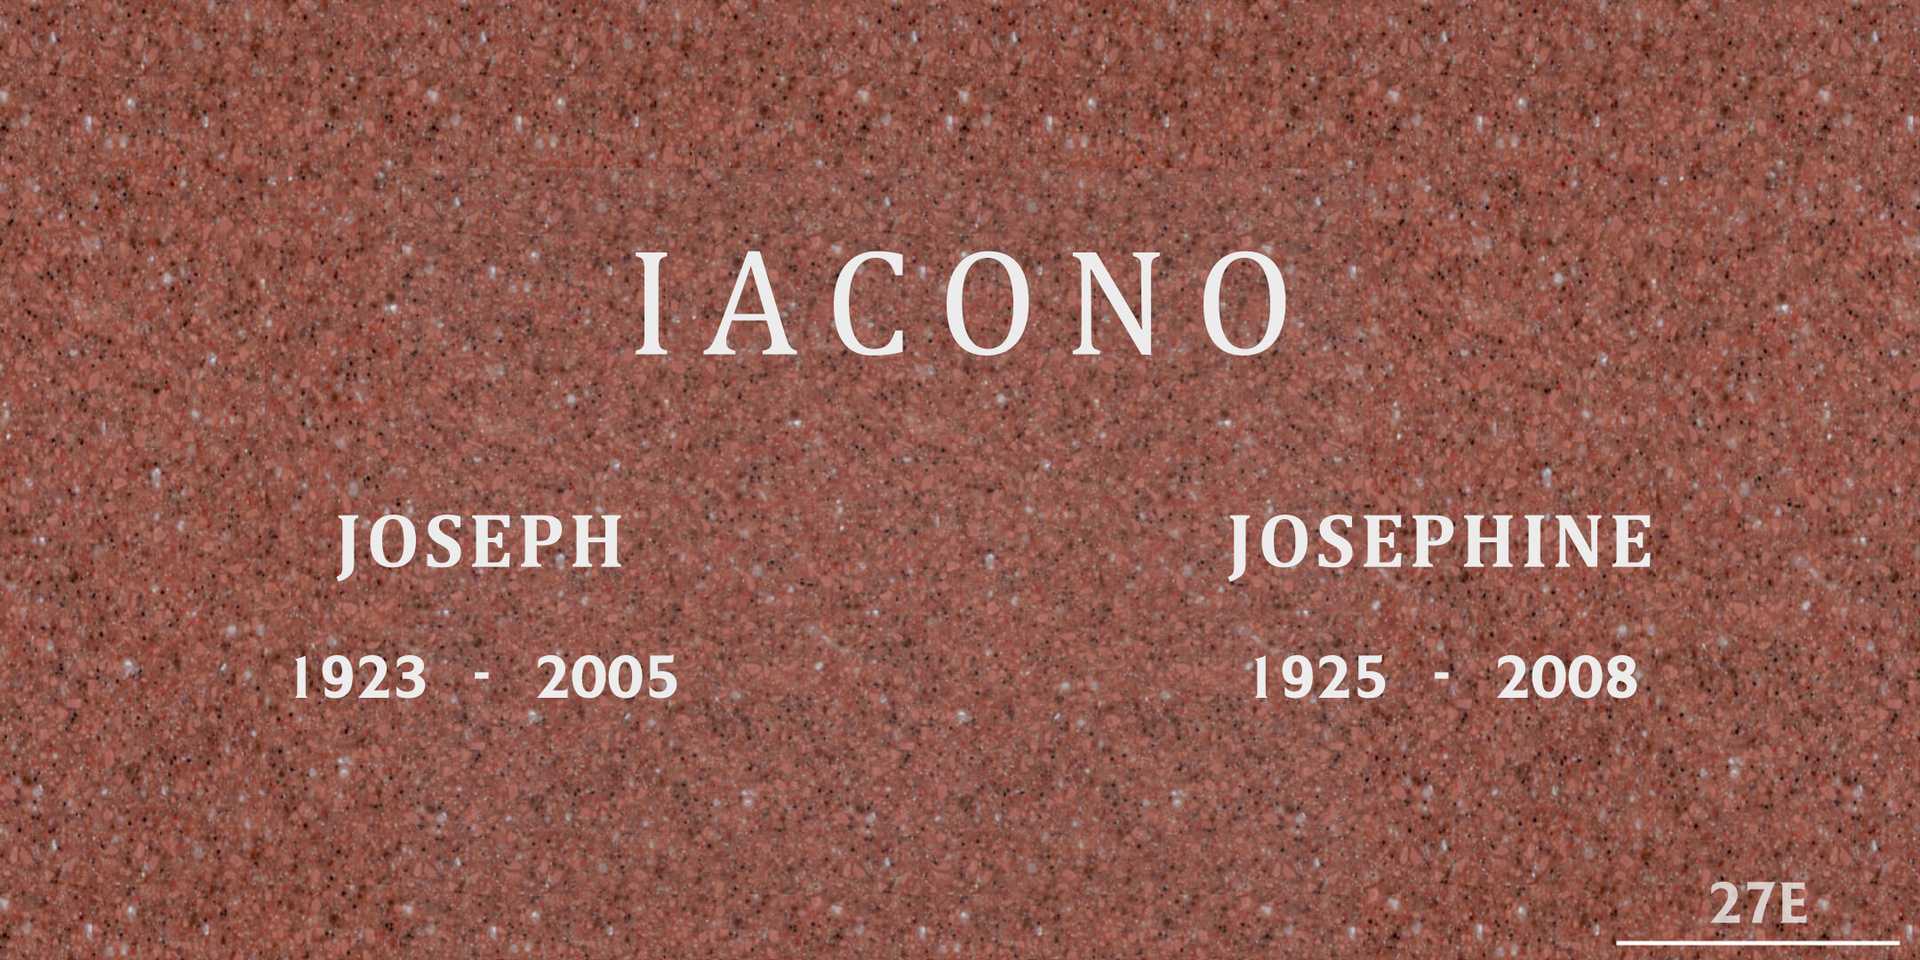 Josephine Iacono's grave